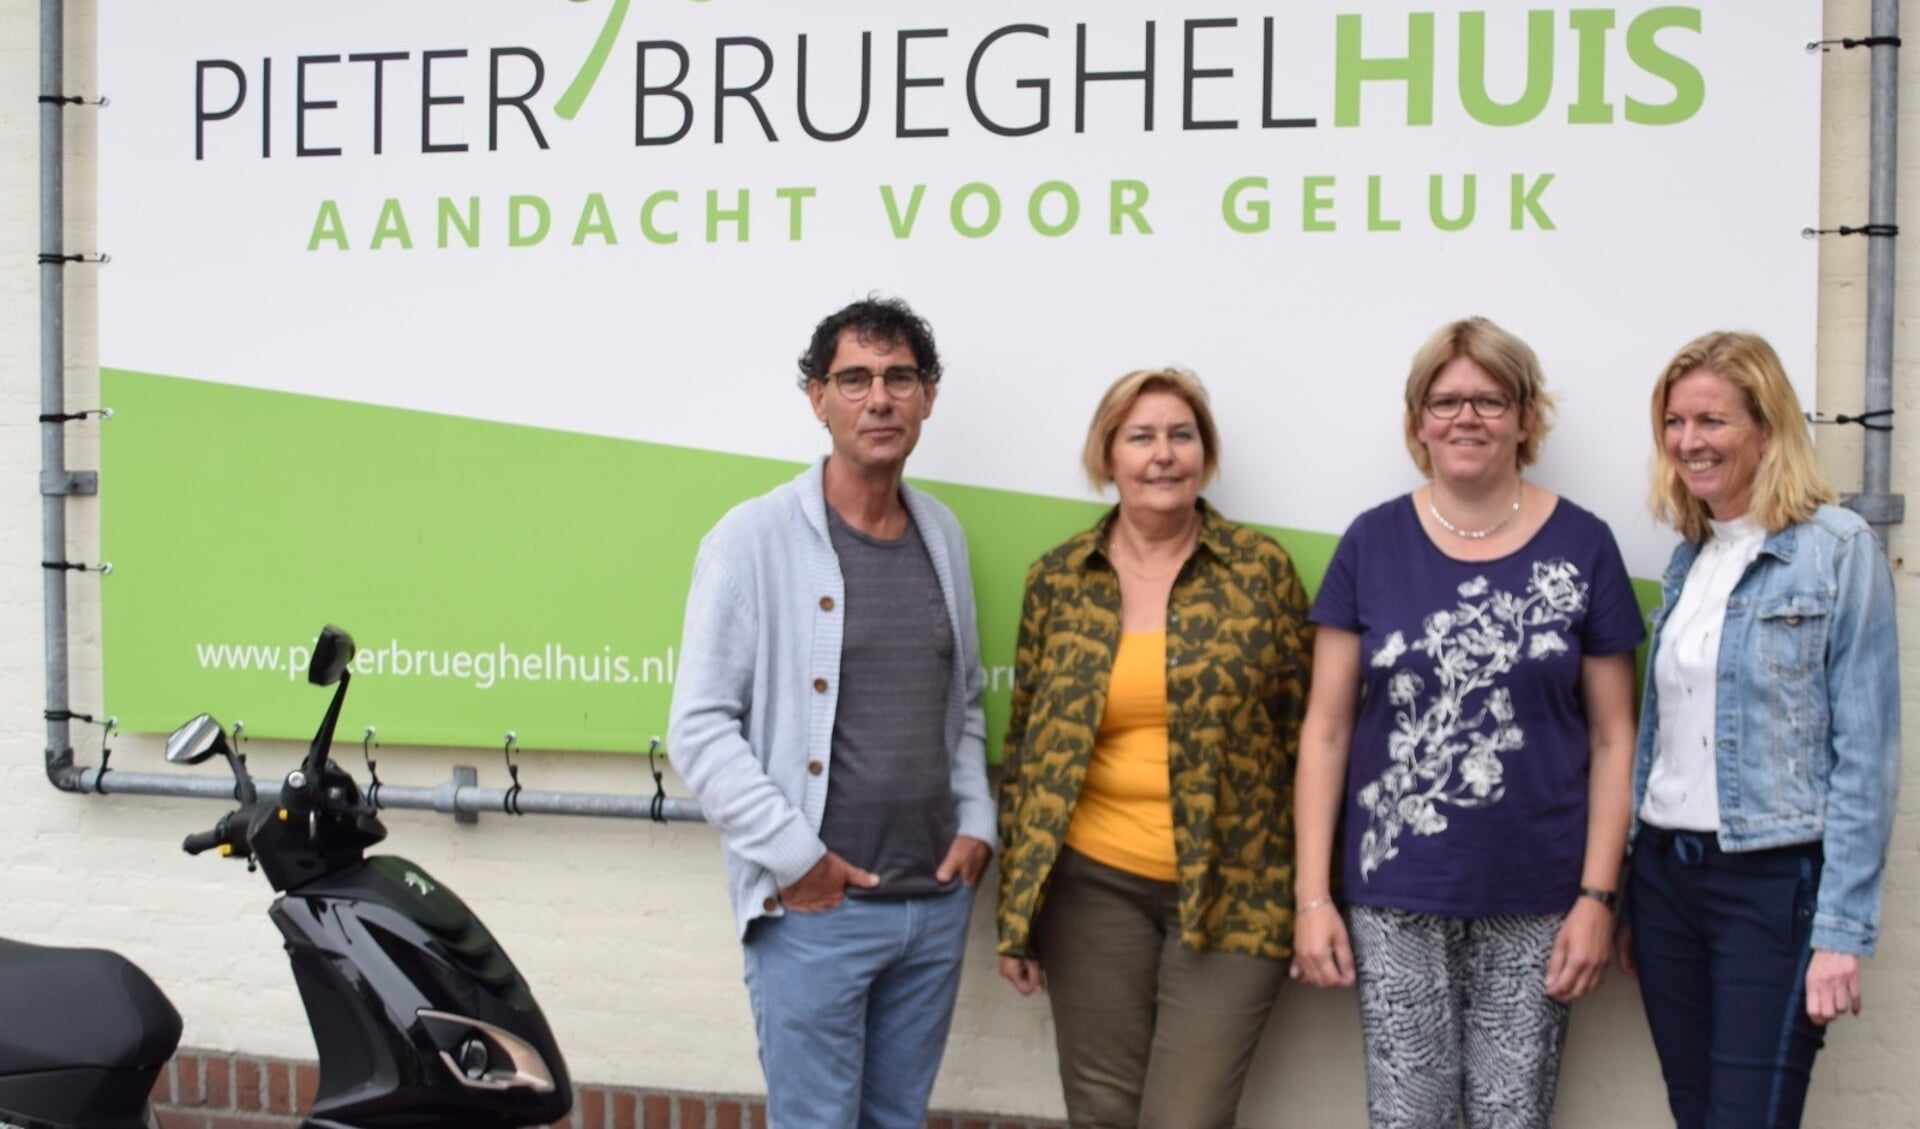 De initiatiefnemers voor het Autismecafé in Veghel. Van links naar rechts: Herman Vissers (MEE),  Marjon van Herpen (ONS welzijn),  Dorien van Rooij (ervaringsdeskundige) en Karin Cornelissen (PieterBrueghelHuis). (foto: W van der Lubbe)